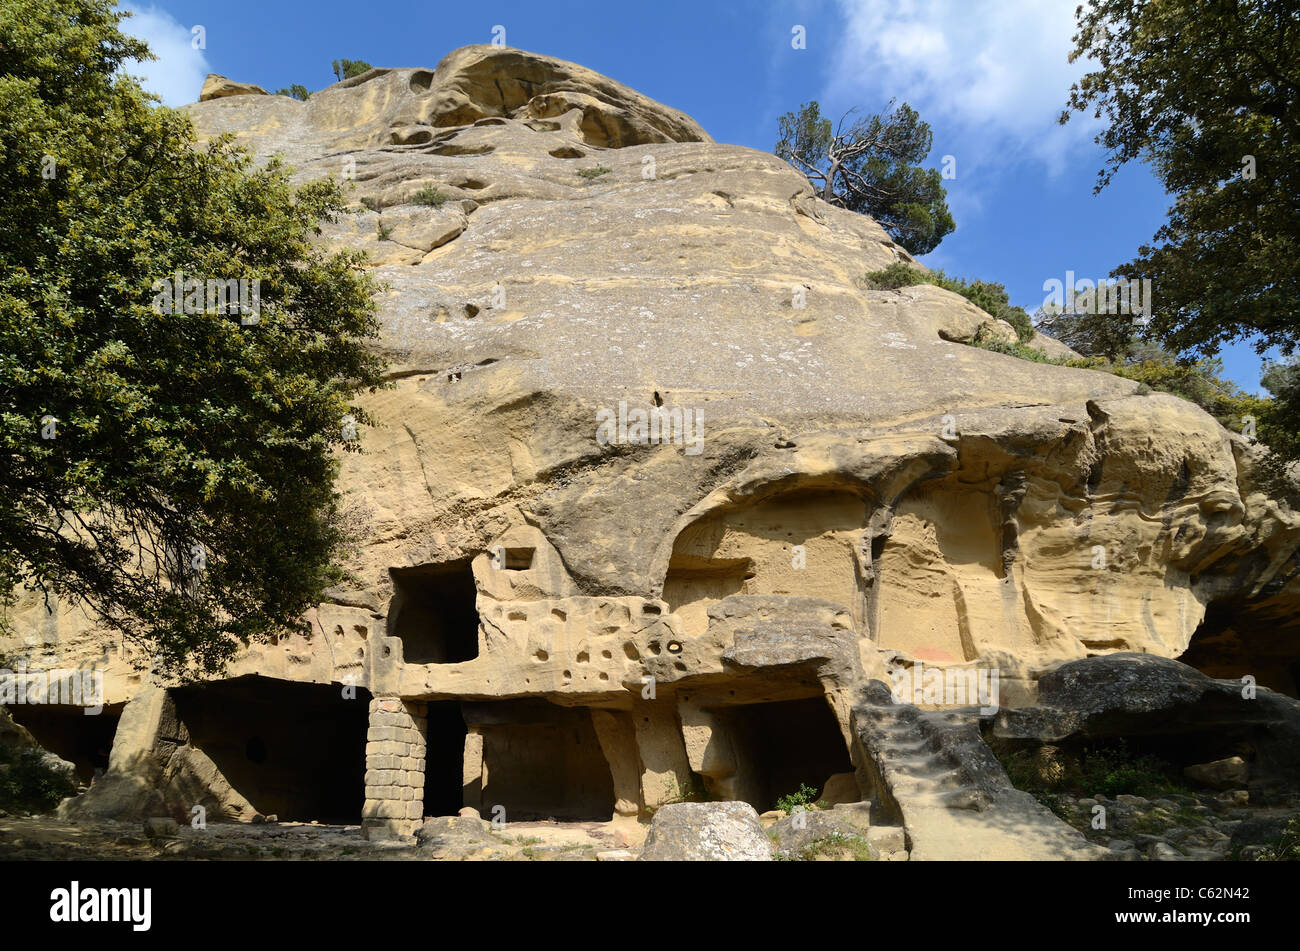 Casas trogloditas, casas cueva, o casas de roca cortada en la cara del acantilado en las Grottes de Calès, Lamanon, Provenza, Francia Foto de stock